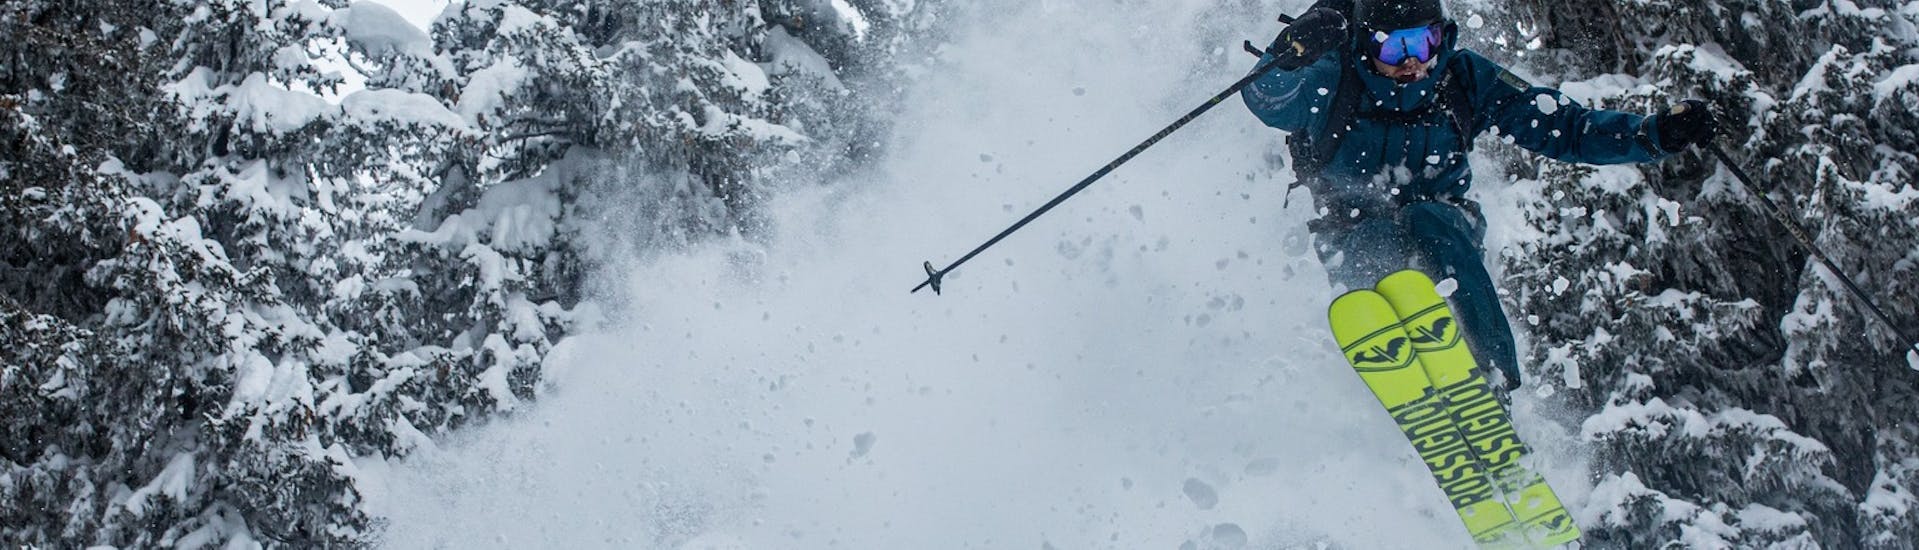 Clases de esquí para adultos a partir de 16 años con experiencia.